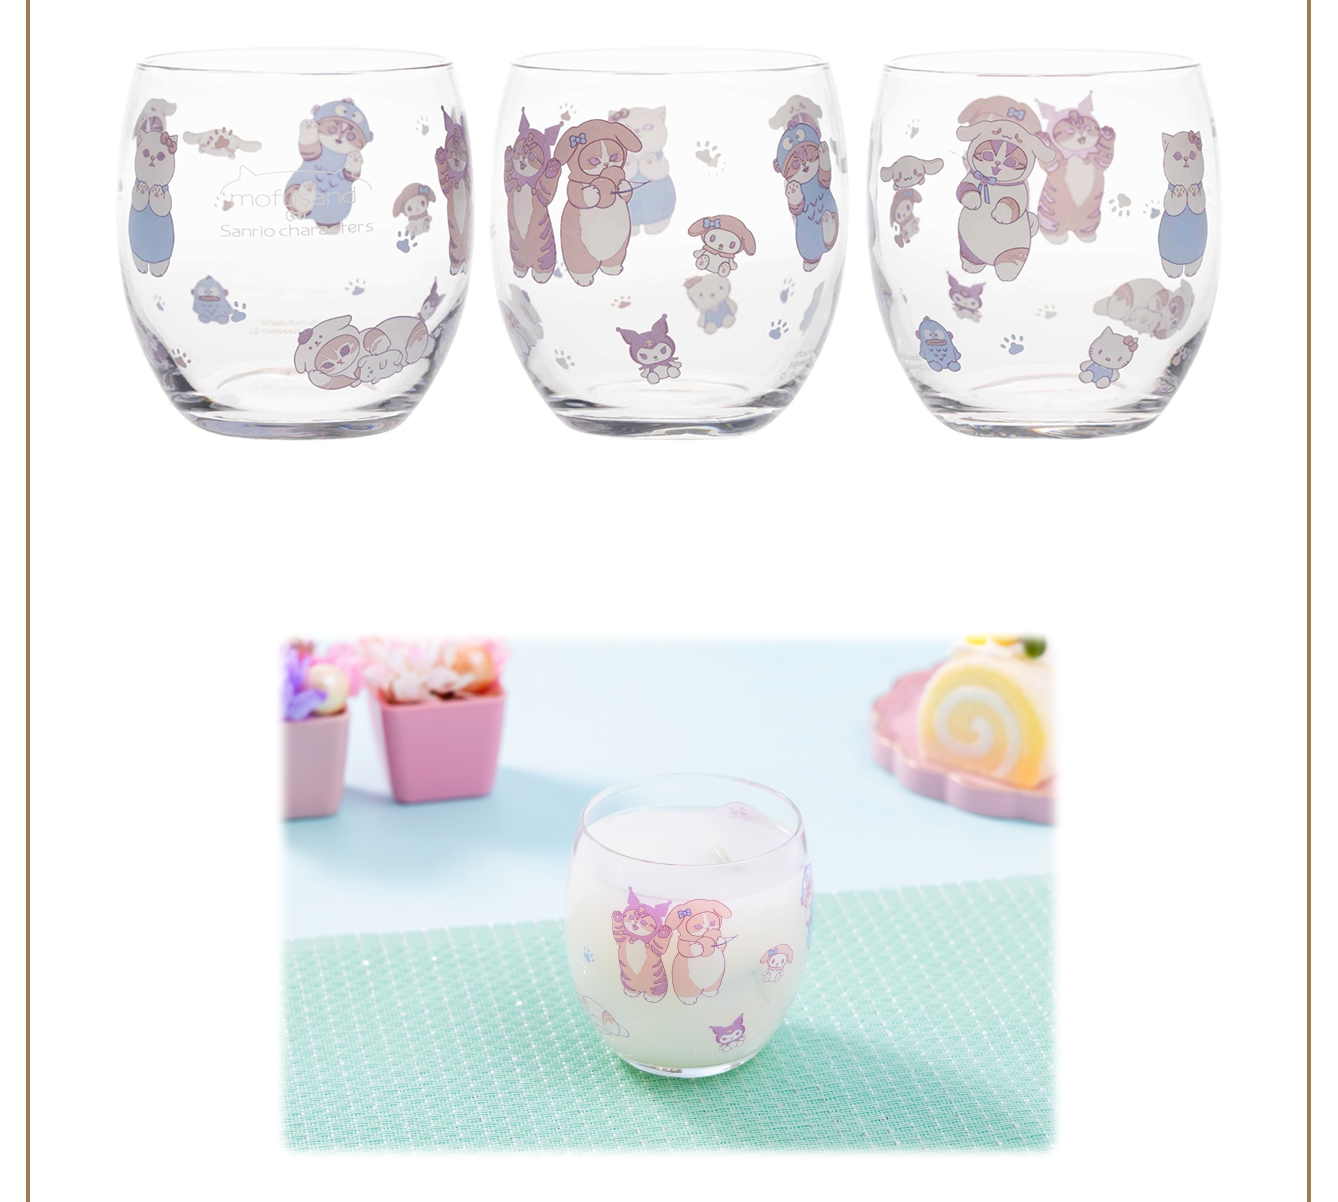 [Order] Mofusand x Sanrio 2nd Collaboration Series  - Mug Cup / Glass / Bowl